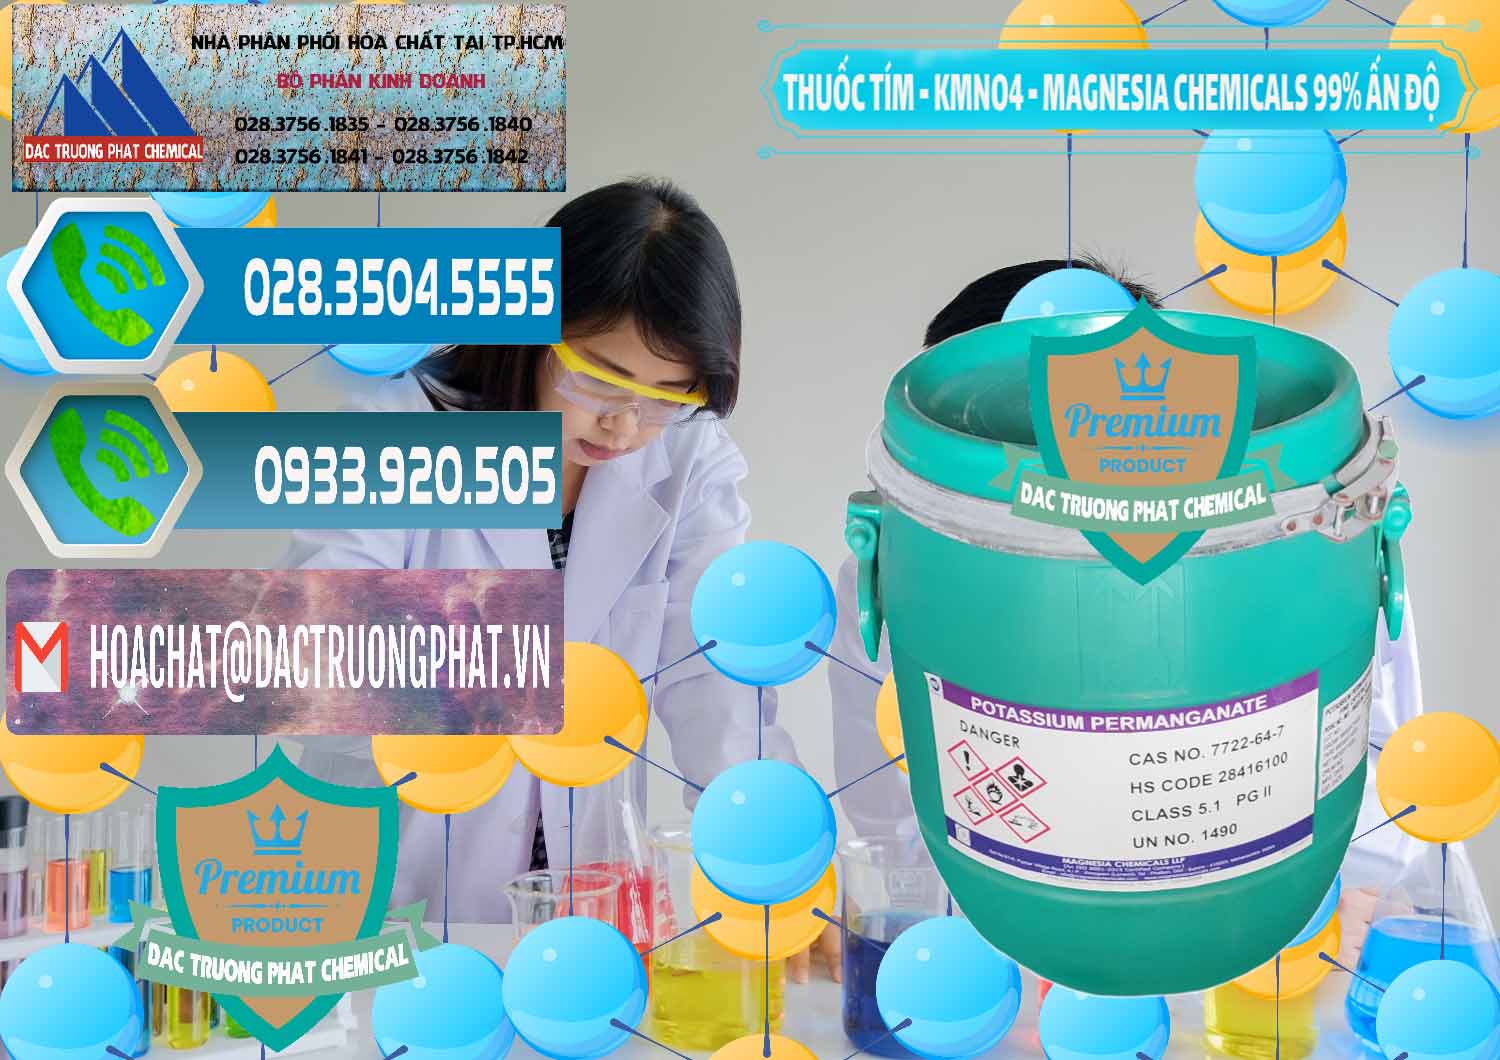 Cty chuyên kinh doanh & bán Thuốc Tím - KMNO4 Magnesia Chemicals 99% Ấn Độ India - 0251 - Chuyên cung ứng và phân phối hóa chất tại TP.HCM - congtyhoachat.net